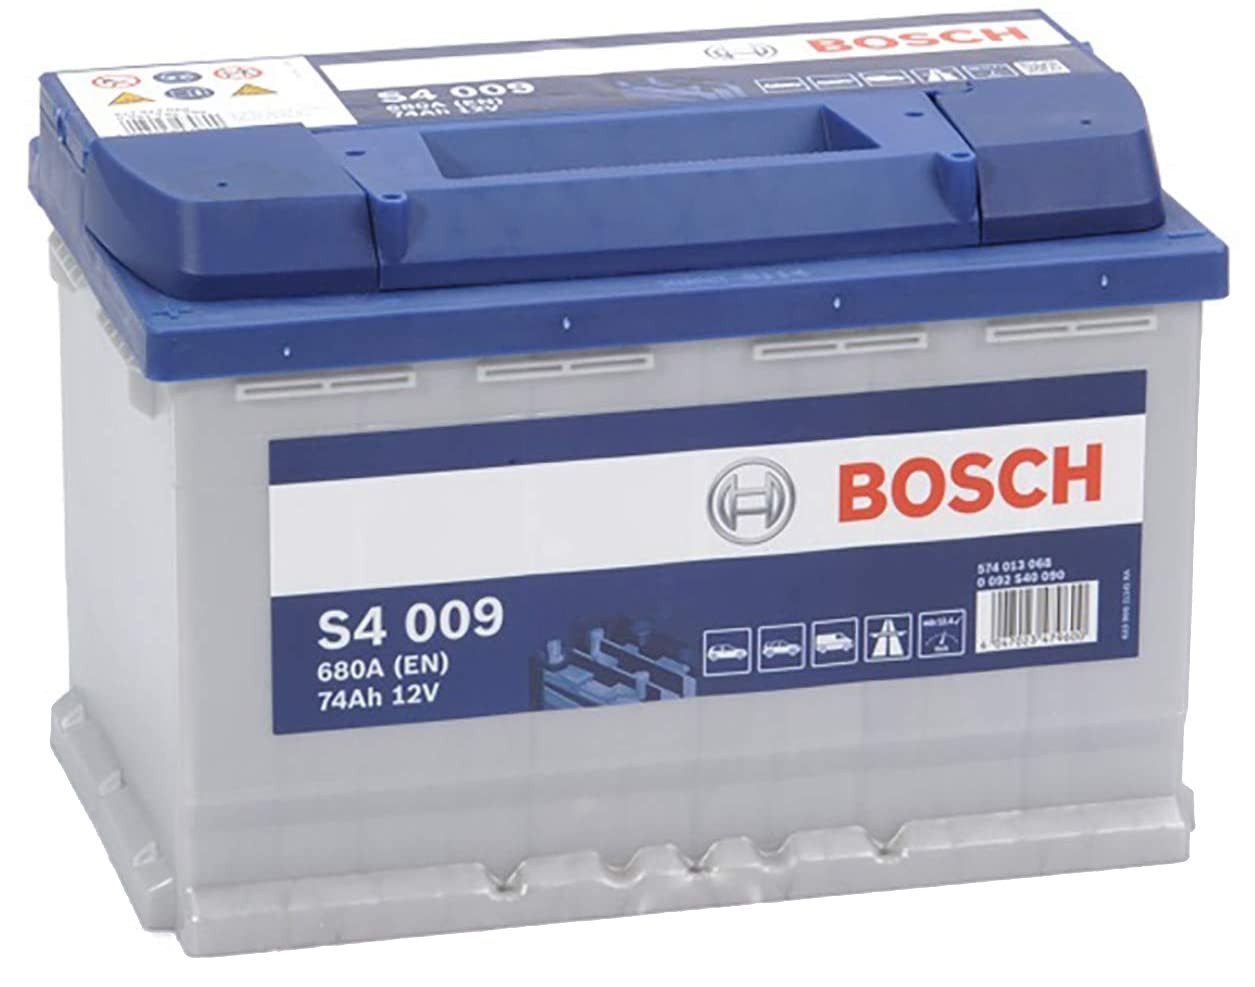 Batterie auto BOSCH S4009 12v 74ah / 680A + à Gauche L3 E12